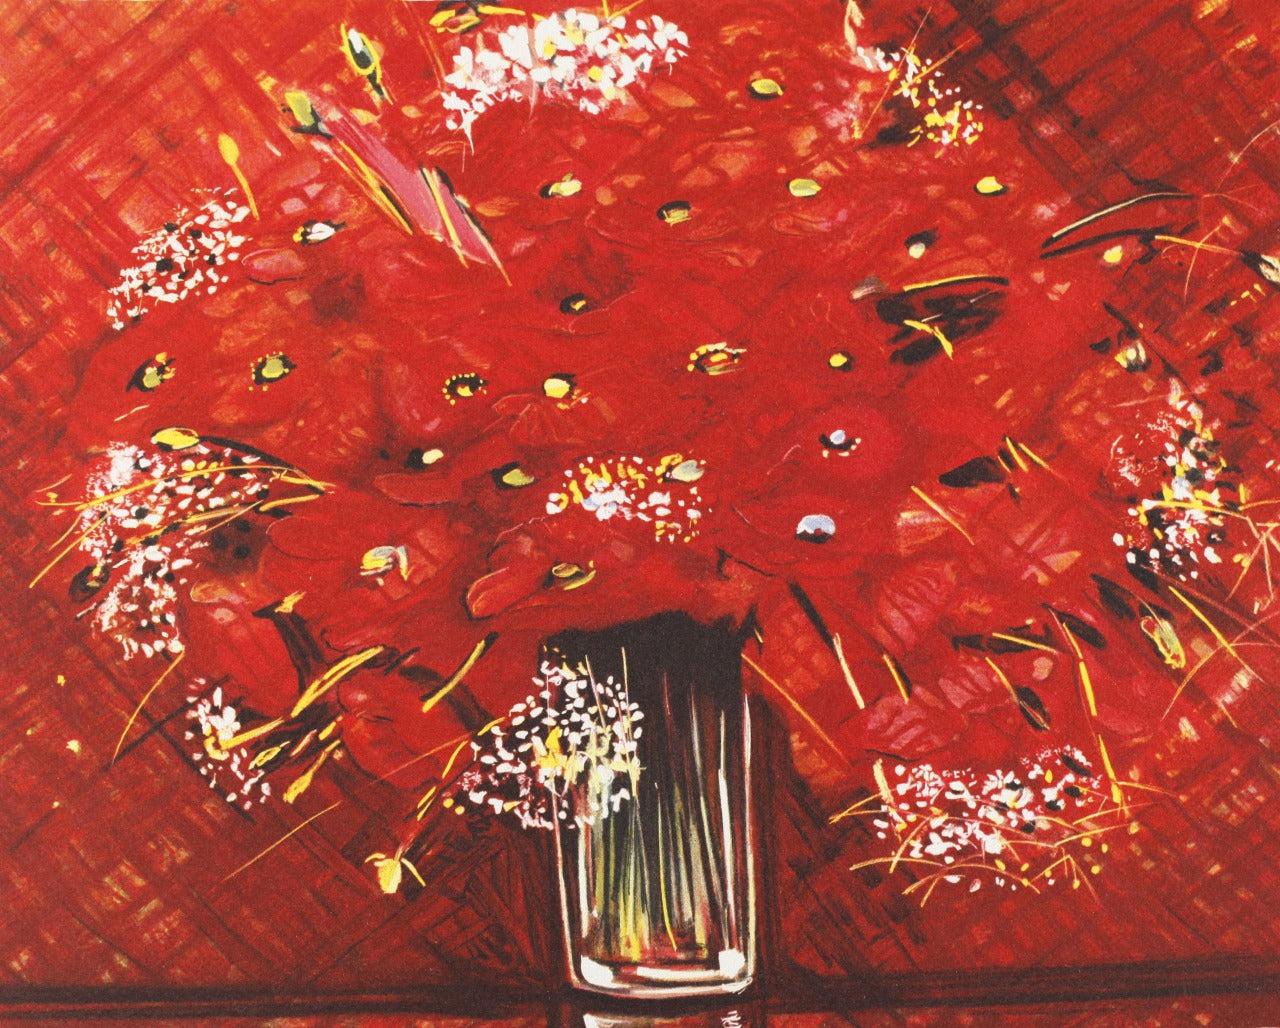 ミッシェル・アンリ　【赤いブーケ】オリジナルリトグラフ版画　作家自筆サイン入り【額付】　　ギャルリー亜出果がミッシェル・アンリと共同で制作した作品です。